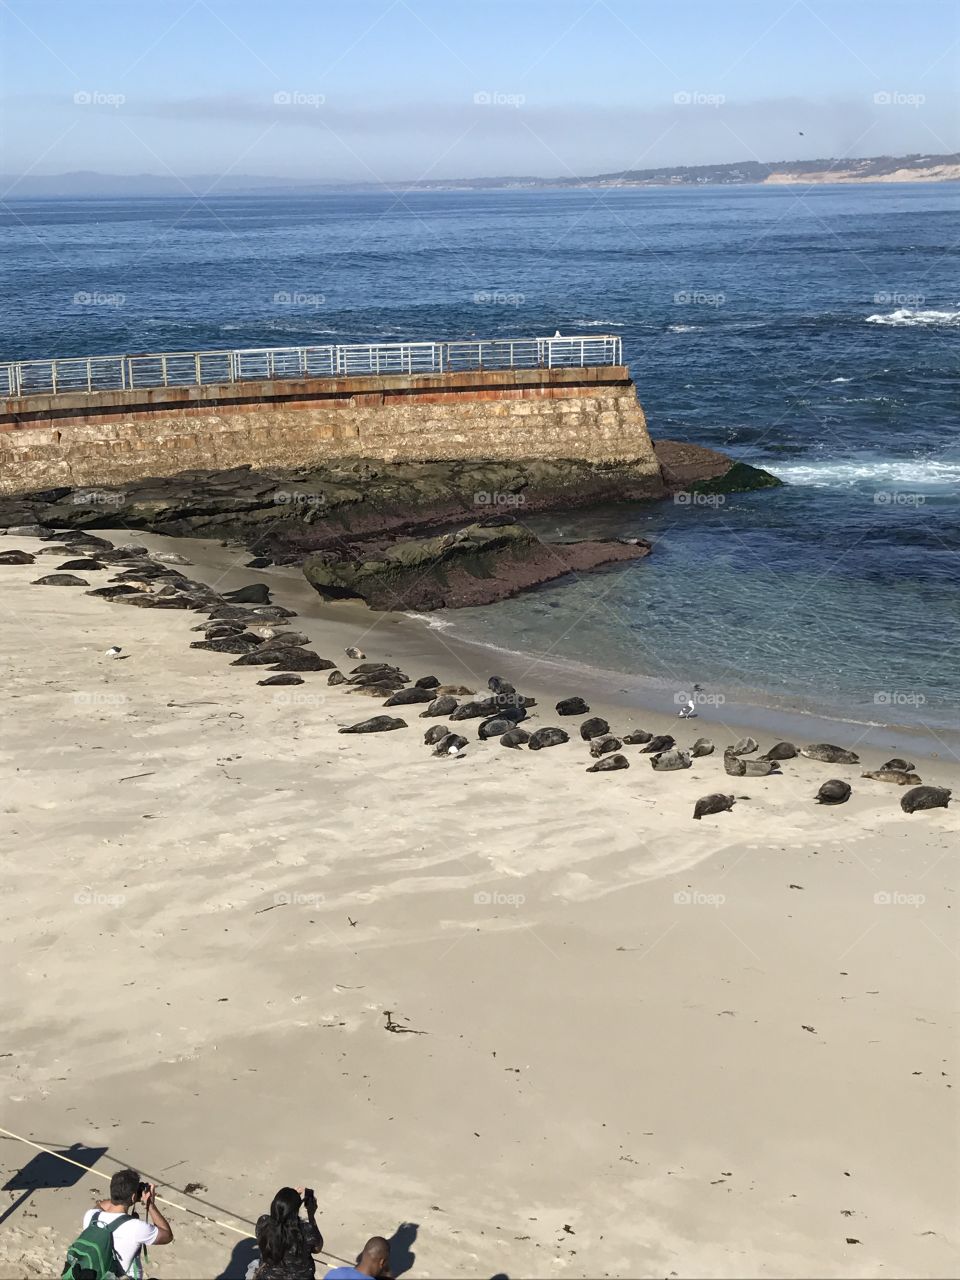 San Diego seals 